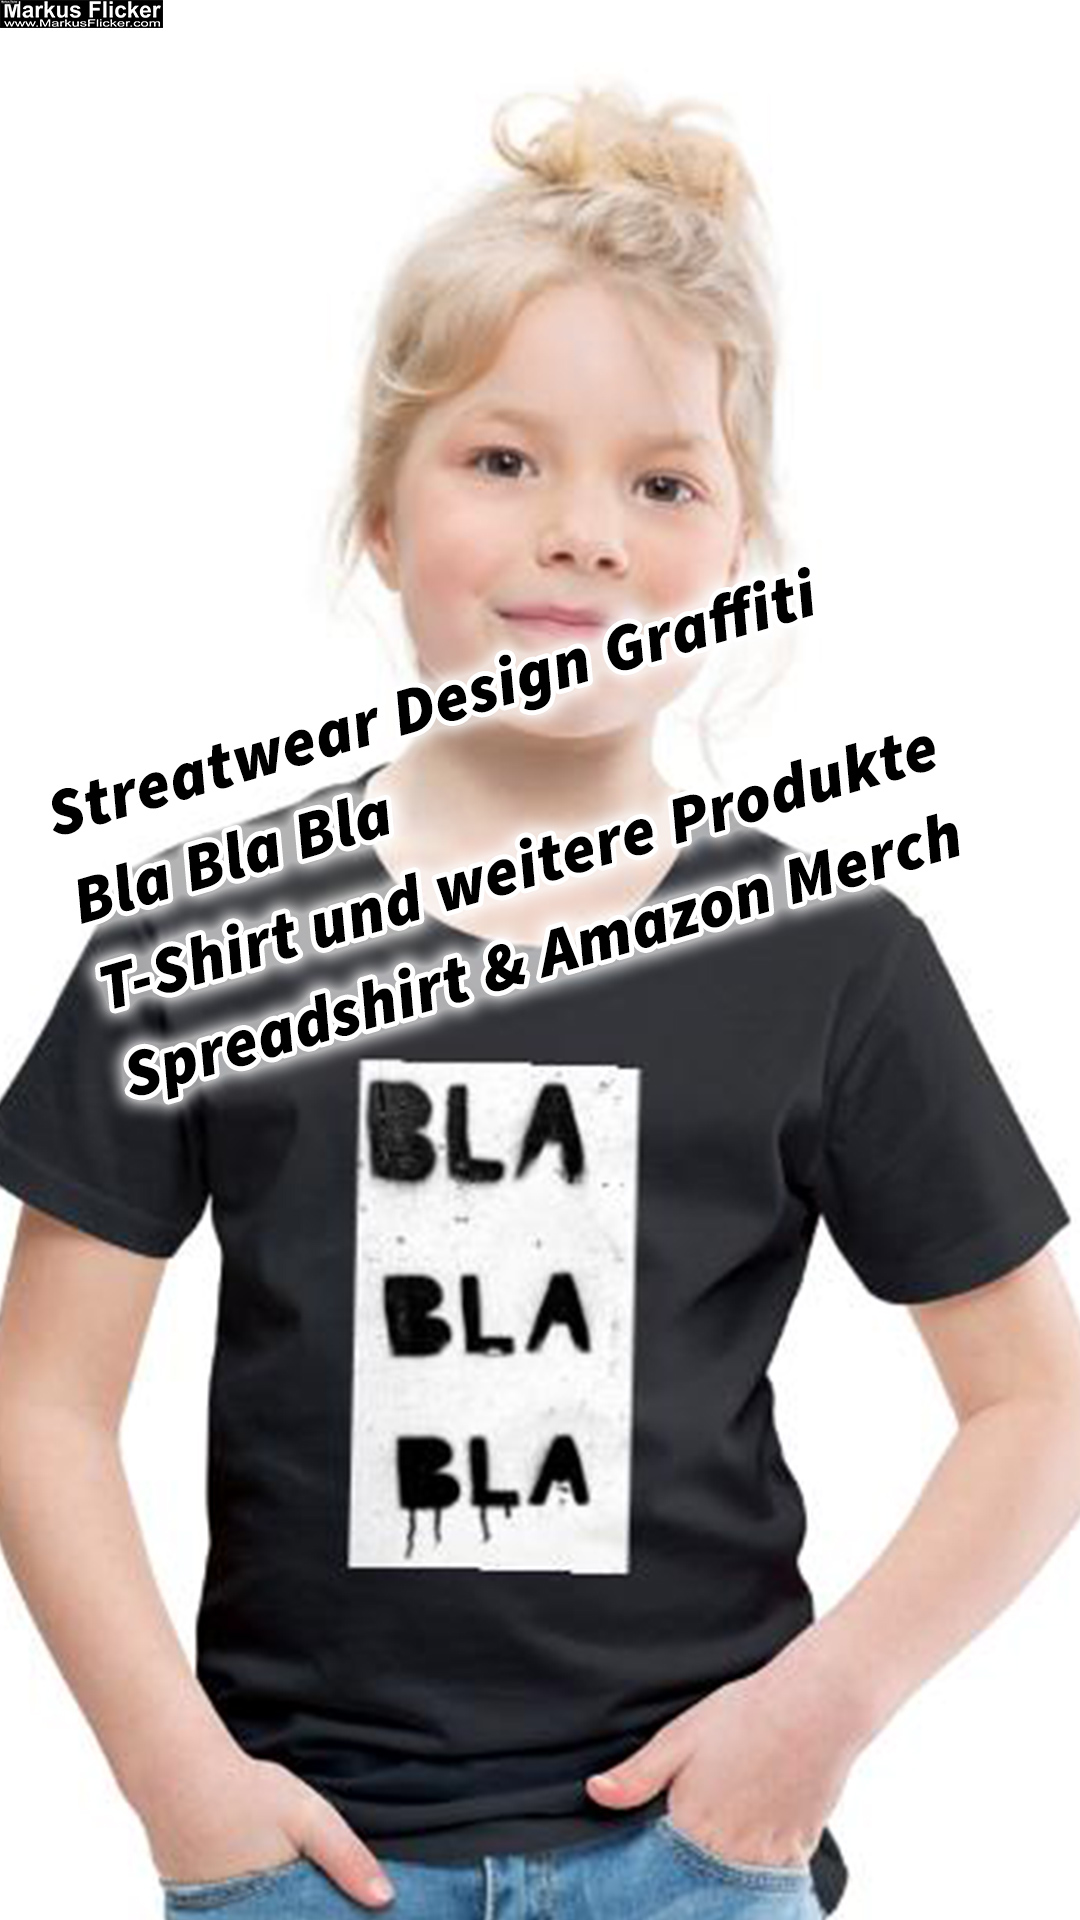 Streatwear Design Graffiti Bla Bla Bla T-Shirt und weitere Produkte Spreadshirt & Amazon Merch